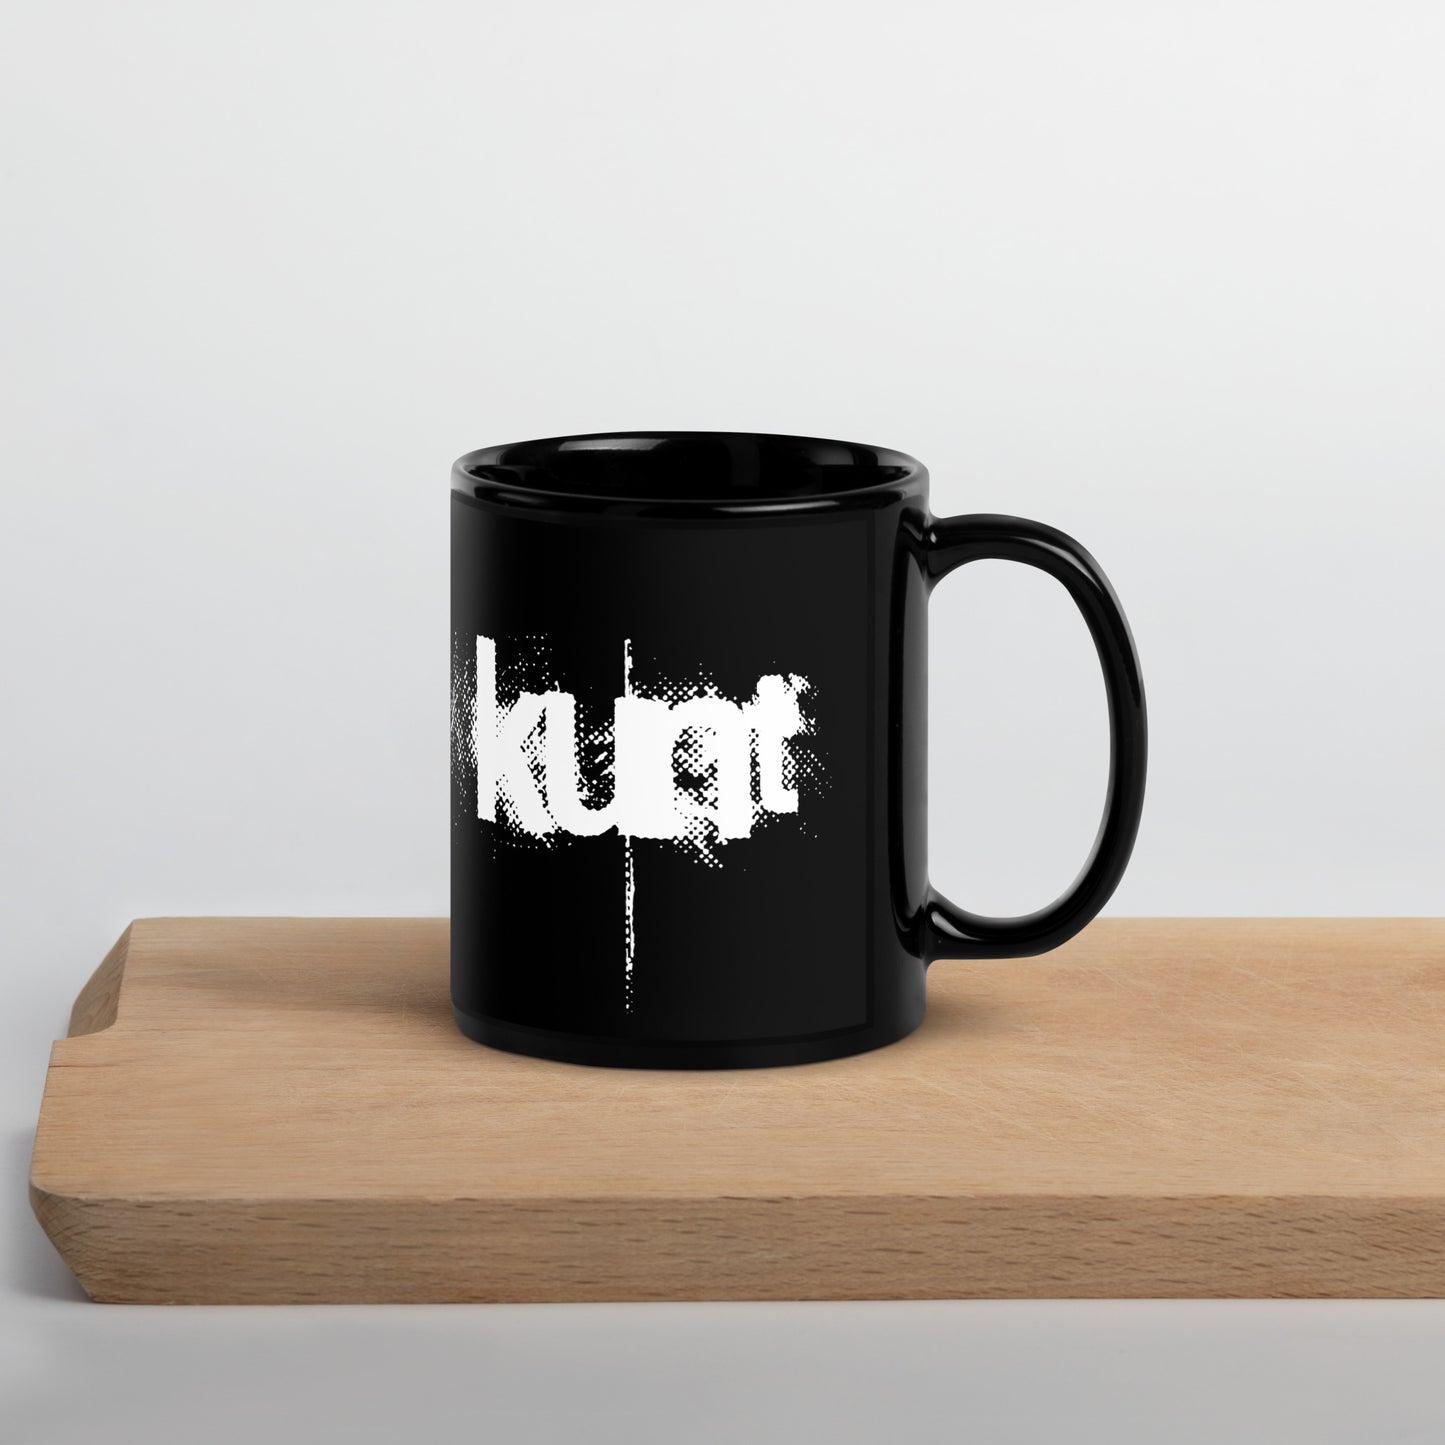 KUNT, official logo, Black Glossy Mug